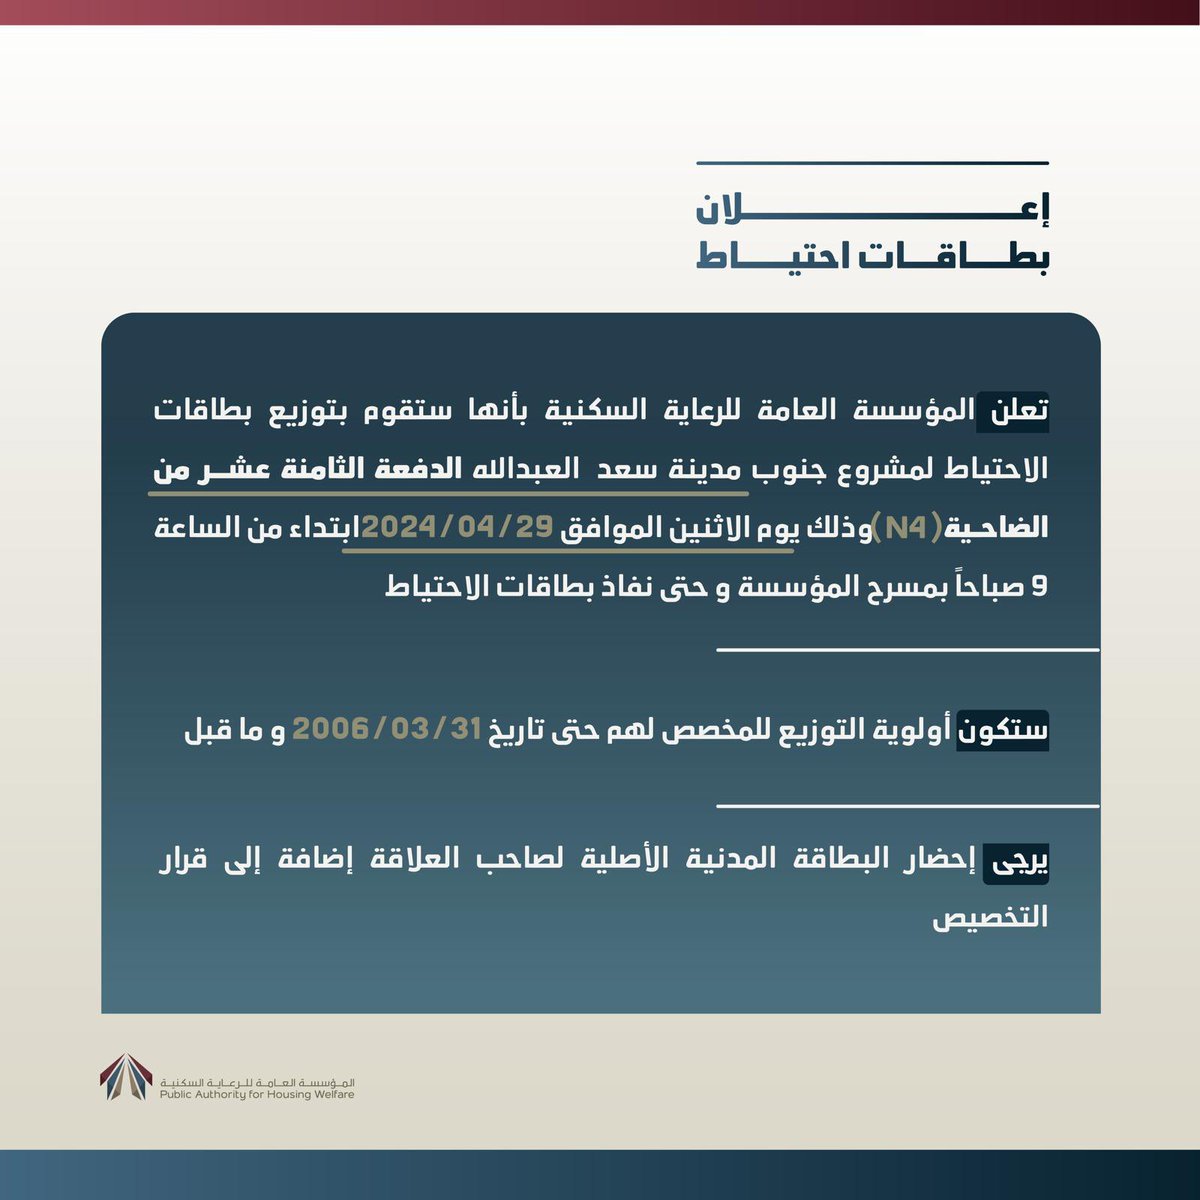 إعلان دعوة للاحتياط لمشروع #جنوب_مدينة_سعد_العبدالله مع ضرورة إحضار البطاقة المدنية لصاحب العلاقة أو إبراز تطبيق هويتي إضافة إلى قرار التخصيص.